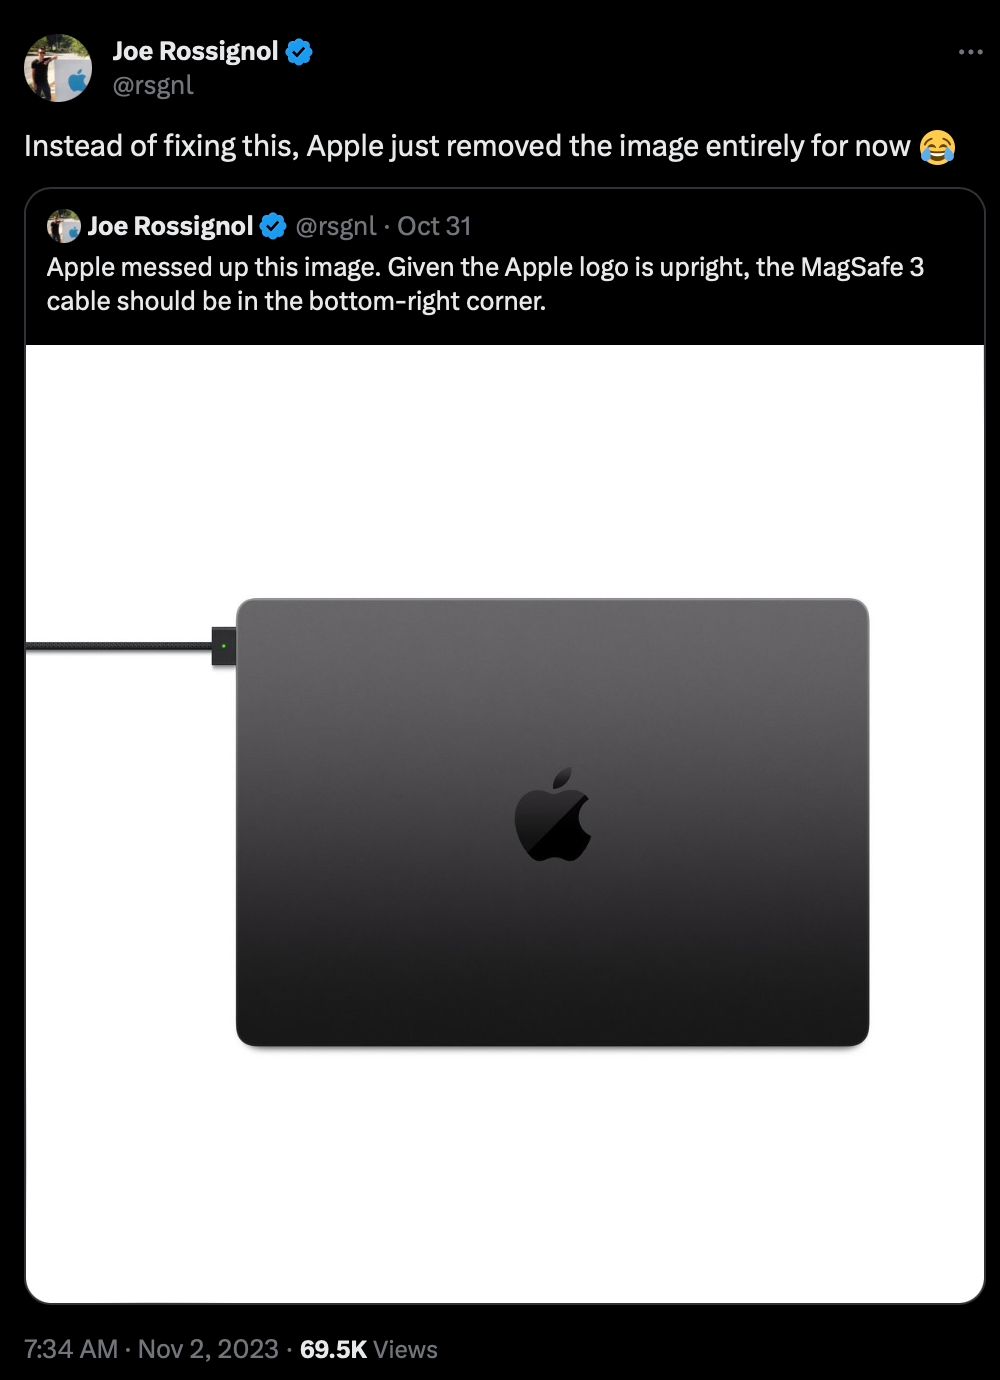 苹果悄然修正官网MacBookPro充电线错误配图